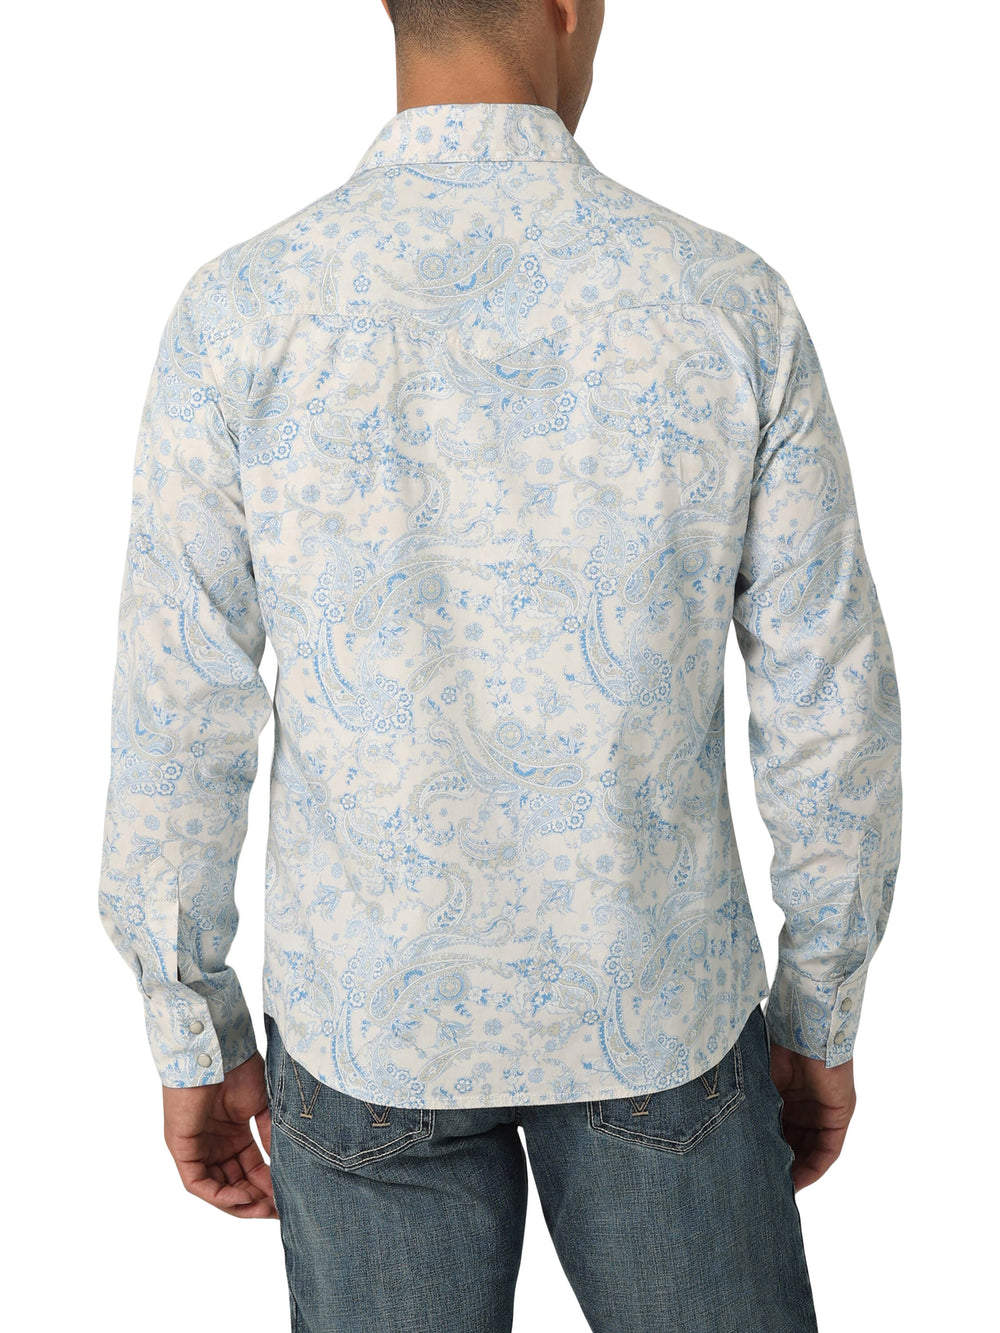 back view of aqua paisley long-sleeve paisley wrangler shirt